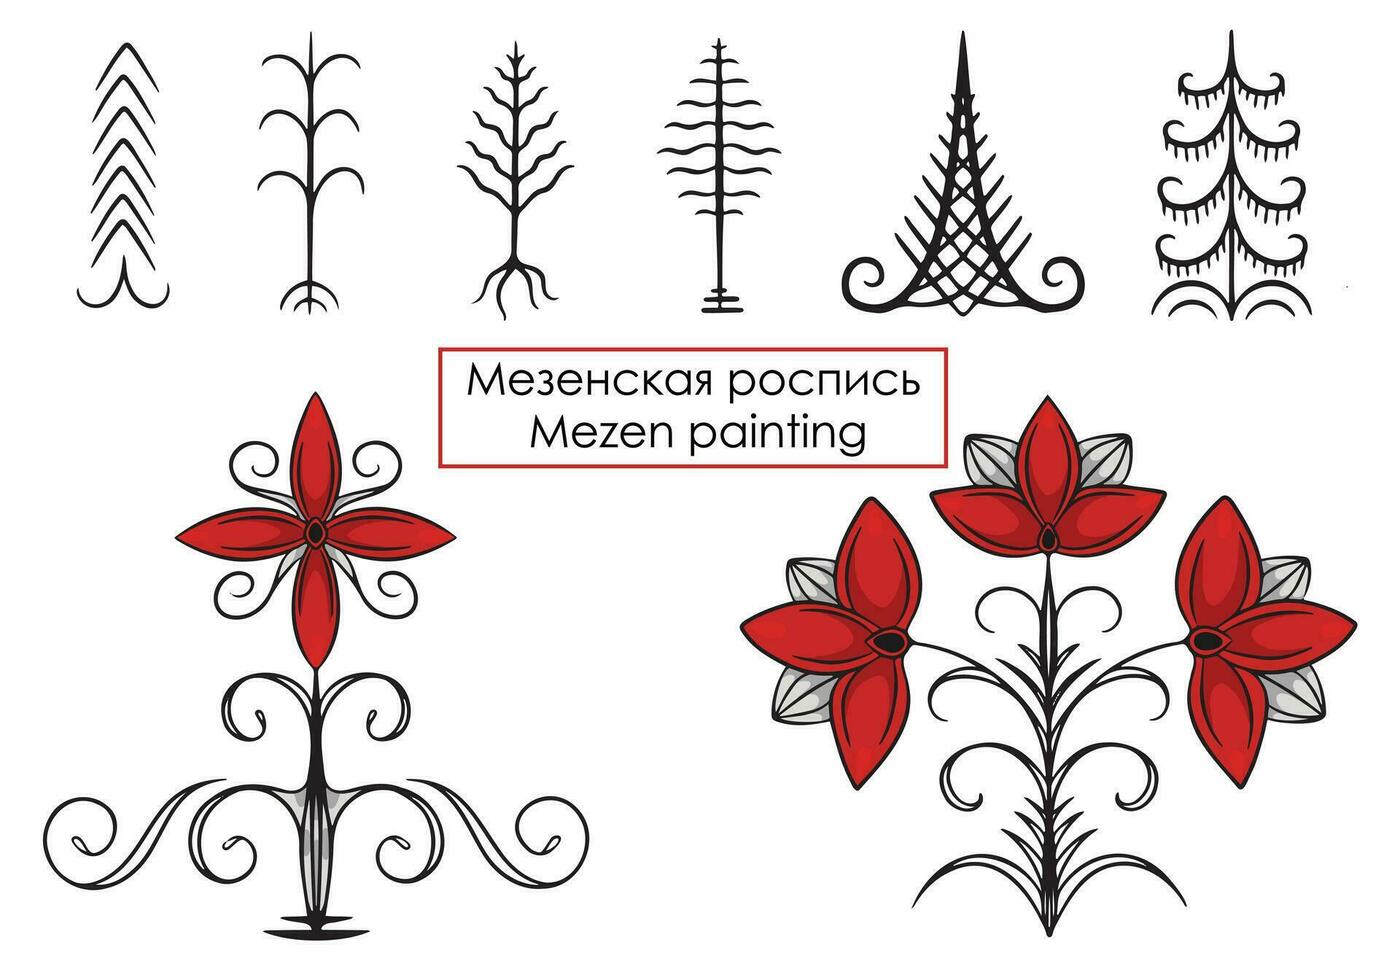 mezen målning. element av traditionell ryska hantverk. vektor